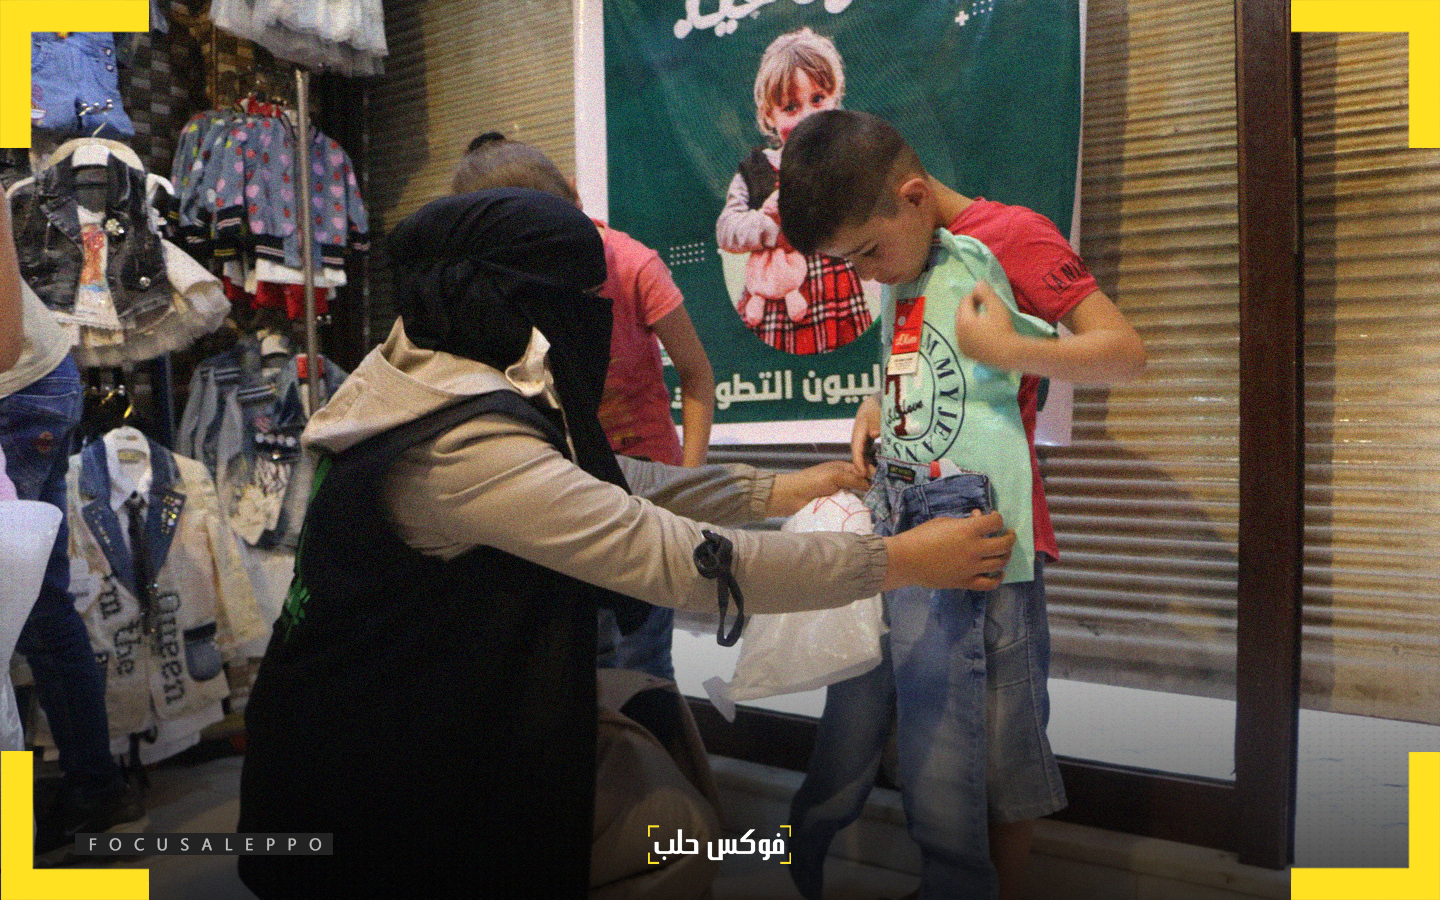 توزيع الألبسة على الأطفال ضمن حملة "كسوة العيد" التي أطلقها "فريق ادلبيون"